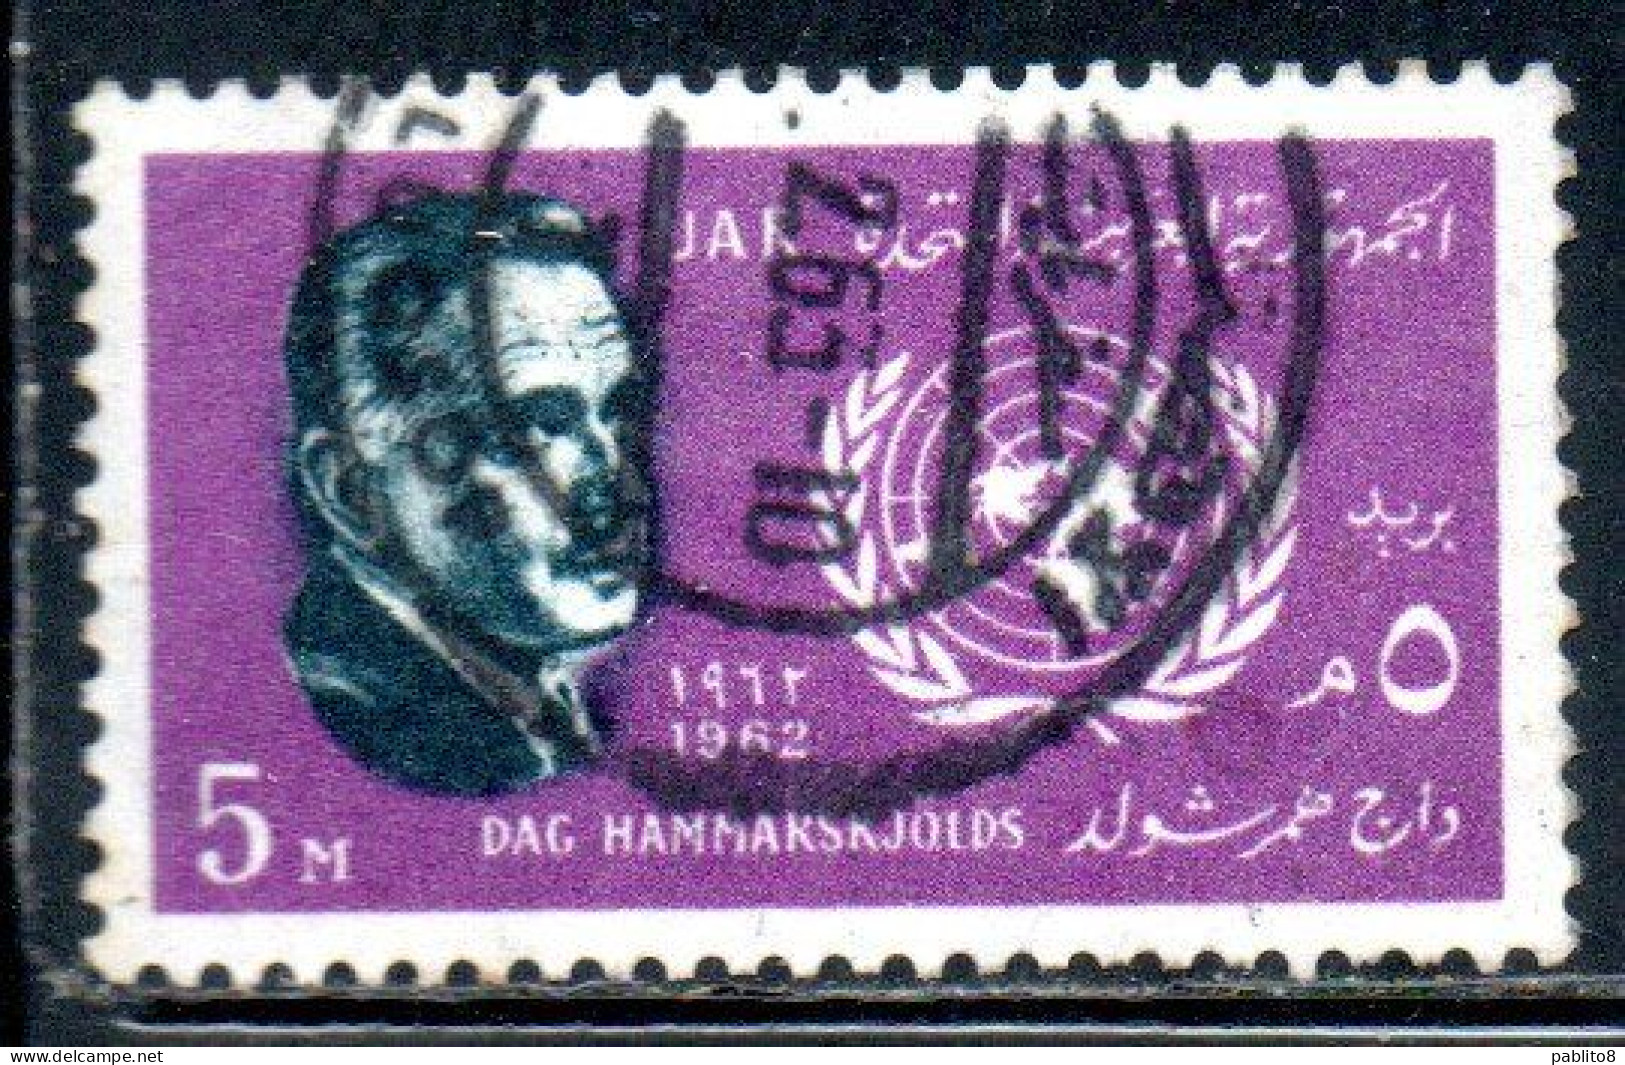 UAR EGYPT EGITTO 1962 DAG HAMMARSKJOLD SECRETARY GENERAL OF THE UN ONU 5m USED USATO OBLITERE' - Usati